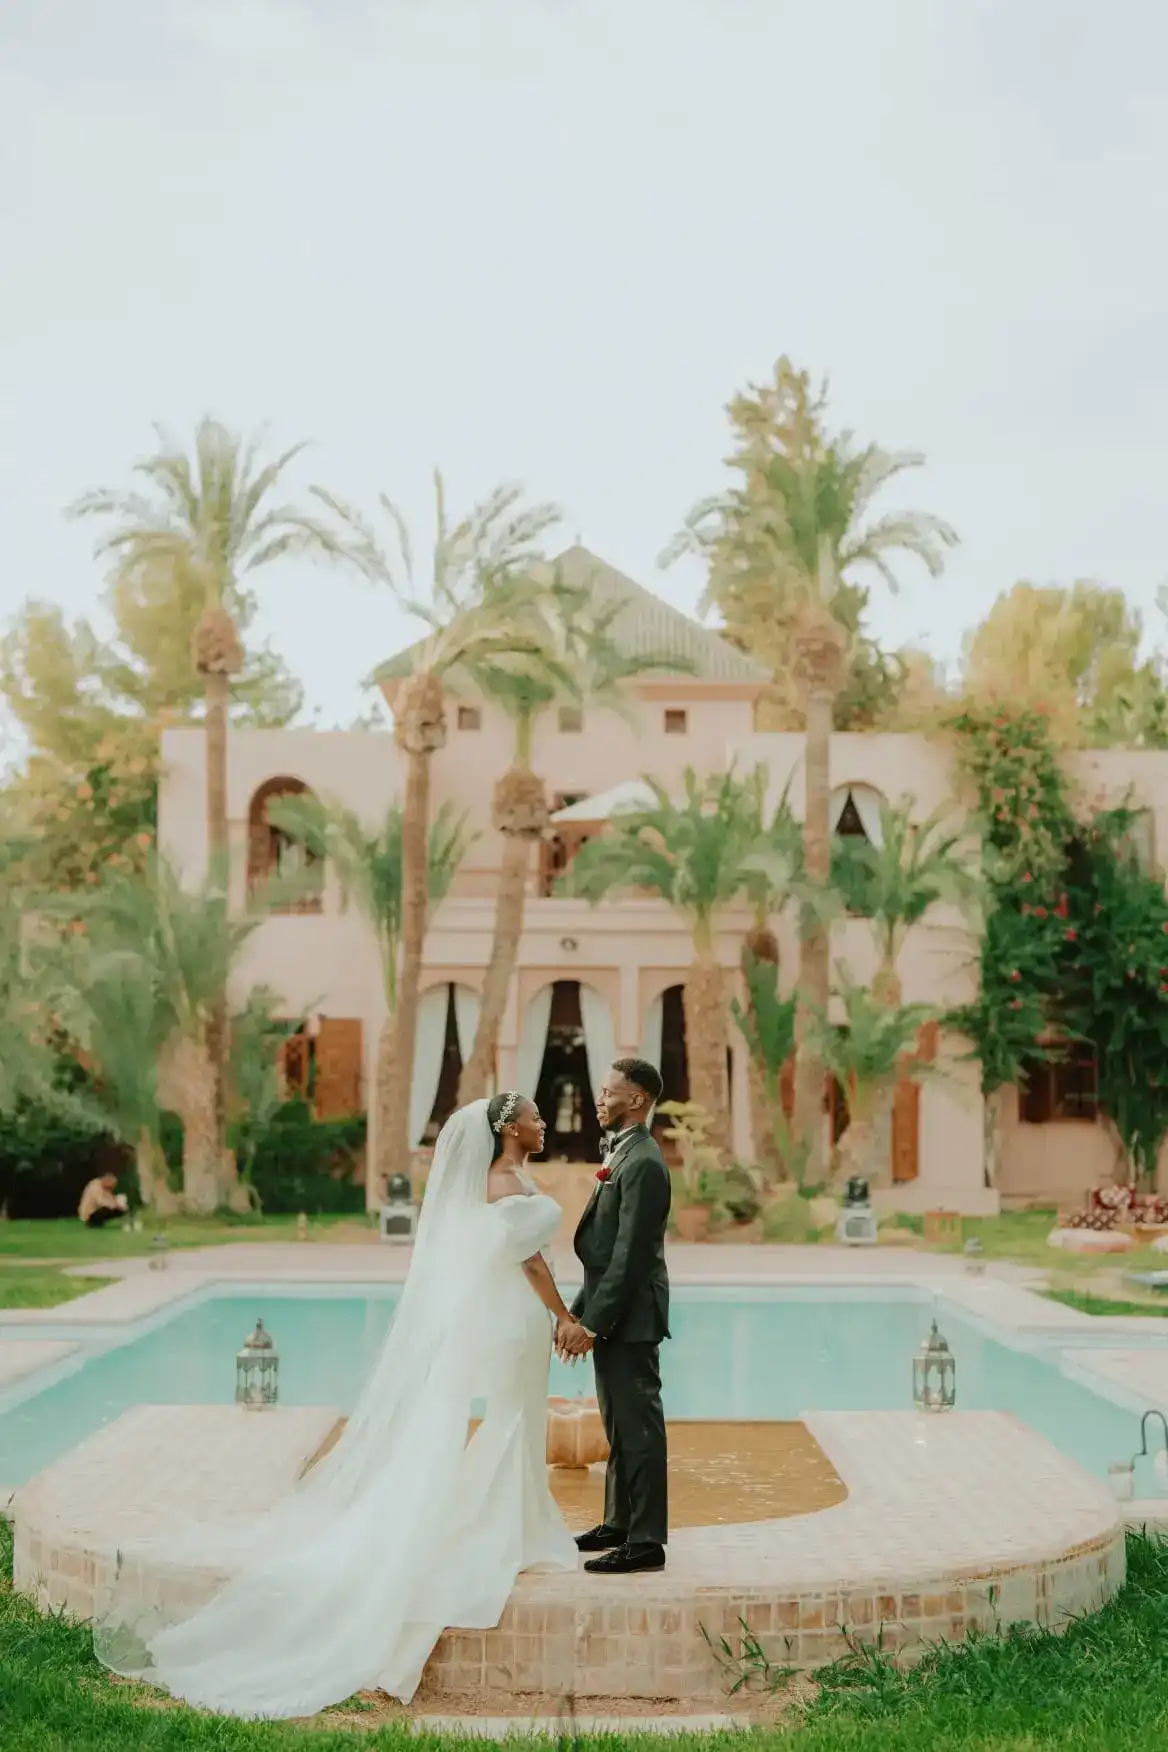 Mariage nigérian coloré à Marrakech inspiré de la nature marocaine